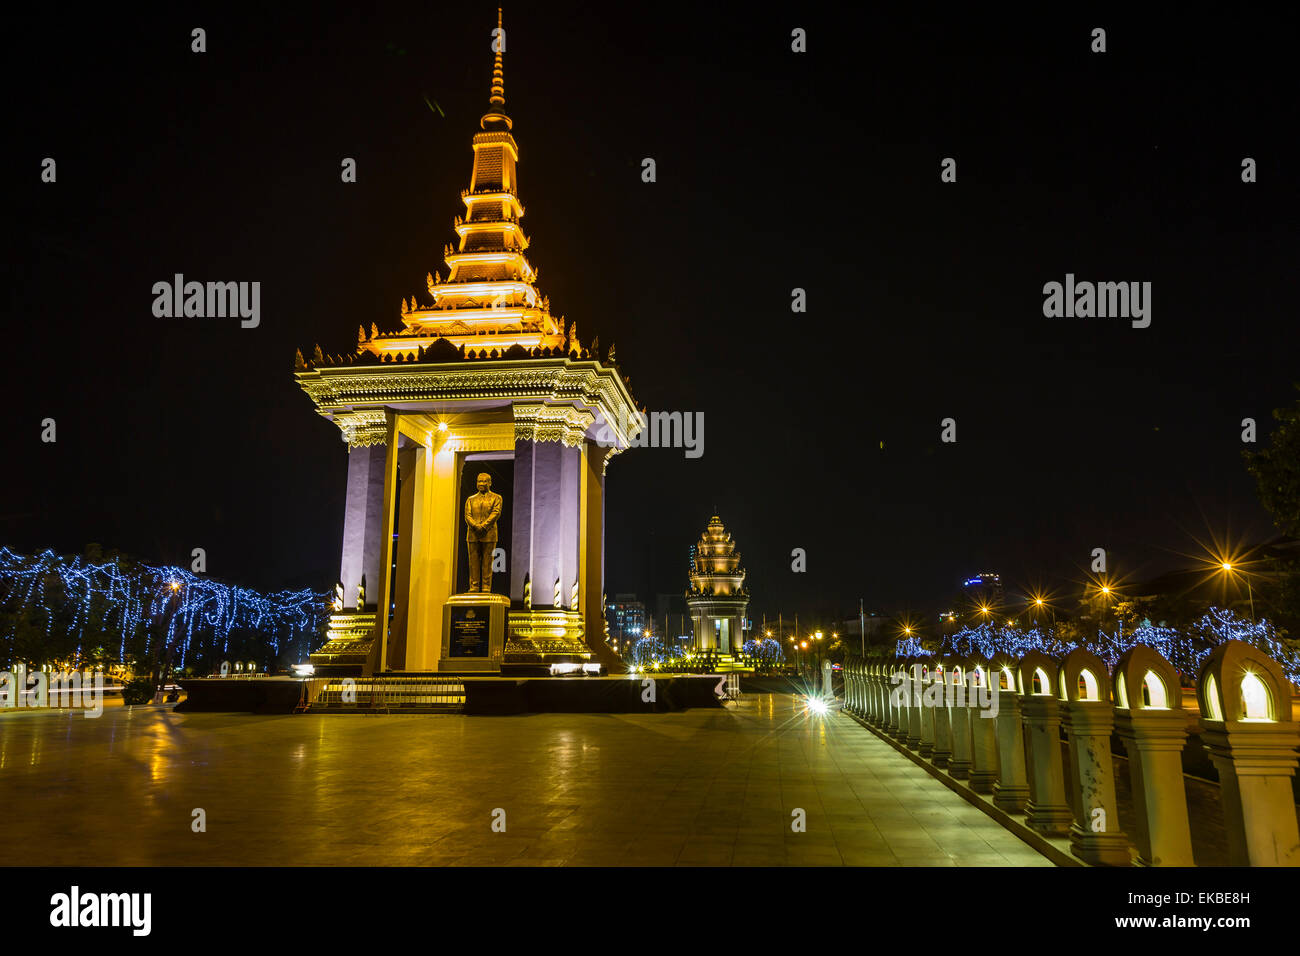 Photographie de nuit de la Statue de Norodom Sihanouk, Phnom Penh, Cambodge, Indochine, Asie du Sud, Asie Banque D'Images